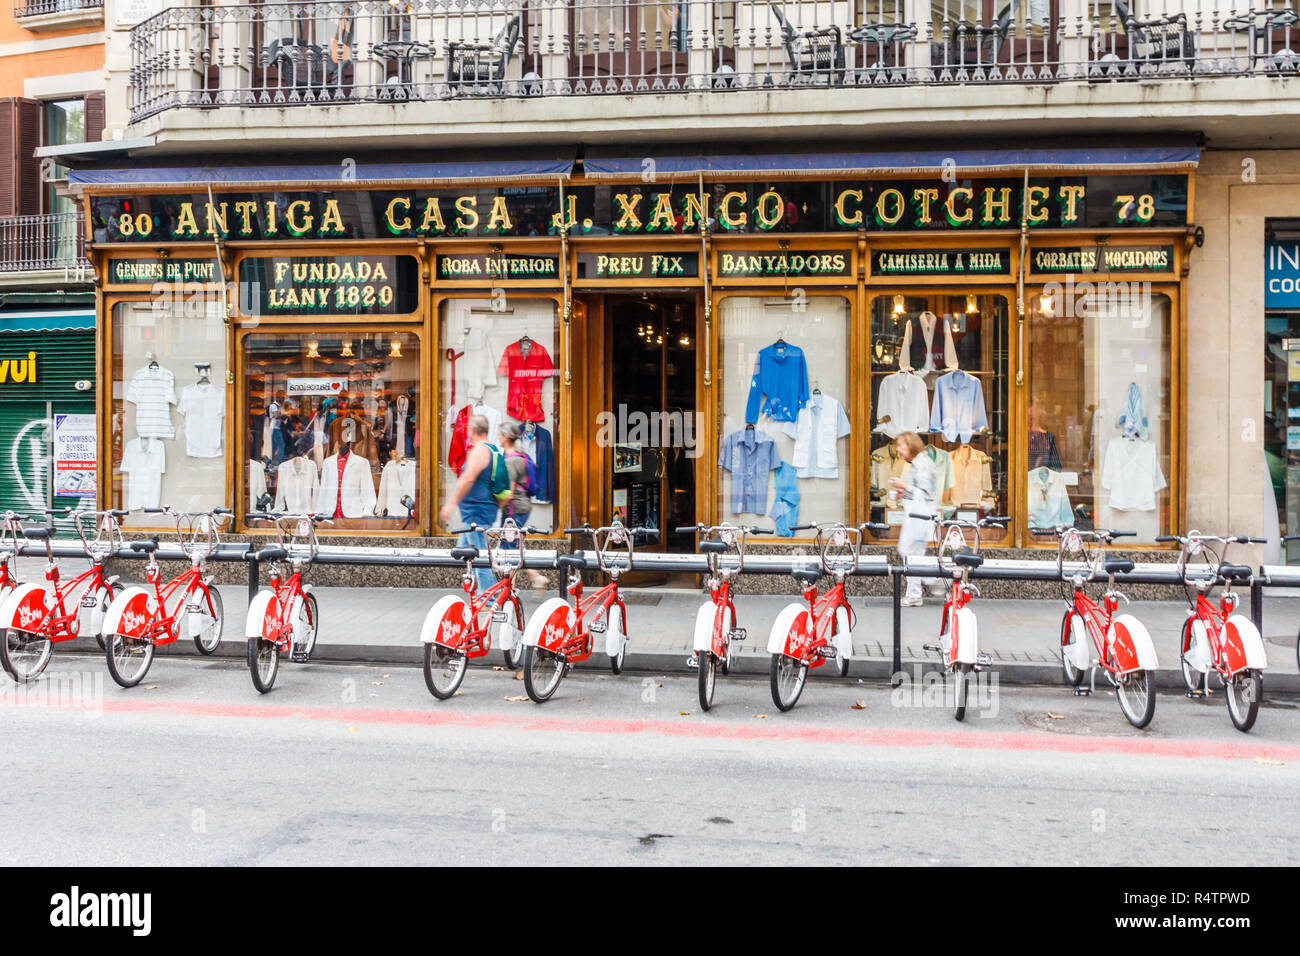 Barcelona, España - 4 de octubre 2017: Bicicletas estacionados fuera de tienda de ropa en Las Ramblas. La calle es muy famosa zona comercial peatonal. Foto de stock